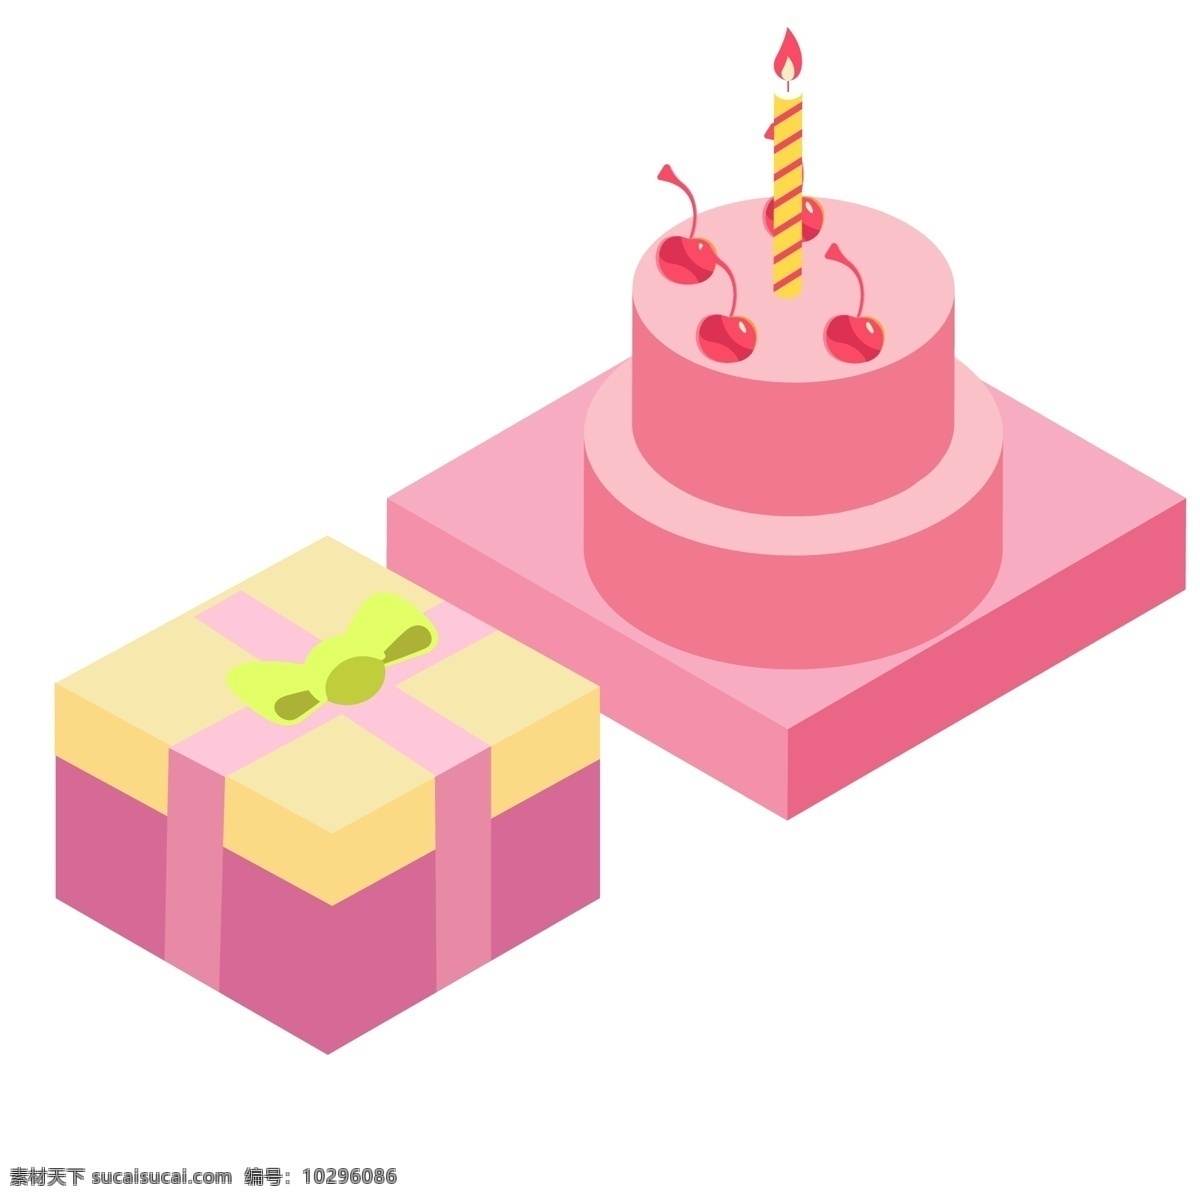 装 蛋糕 的卡 通 盒子 礼盒 卡通礼盒 糕点 生日蛋糕 过生日 生日图案